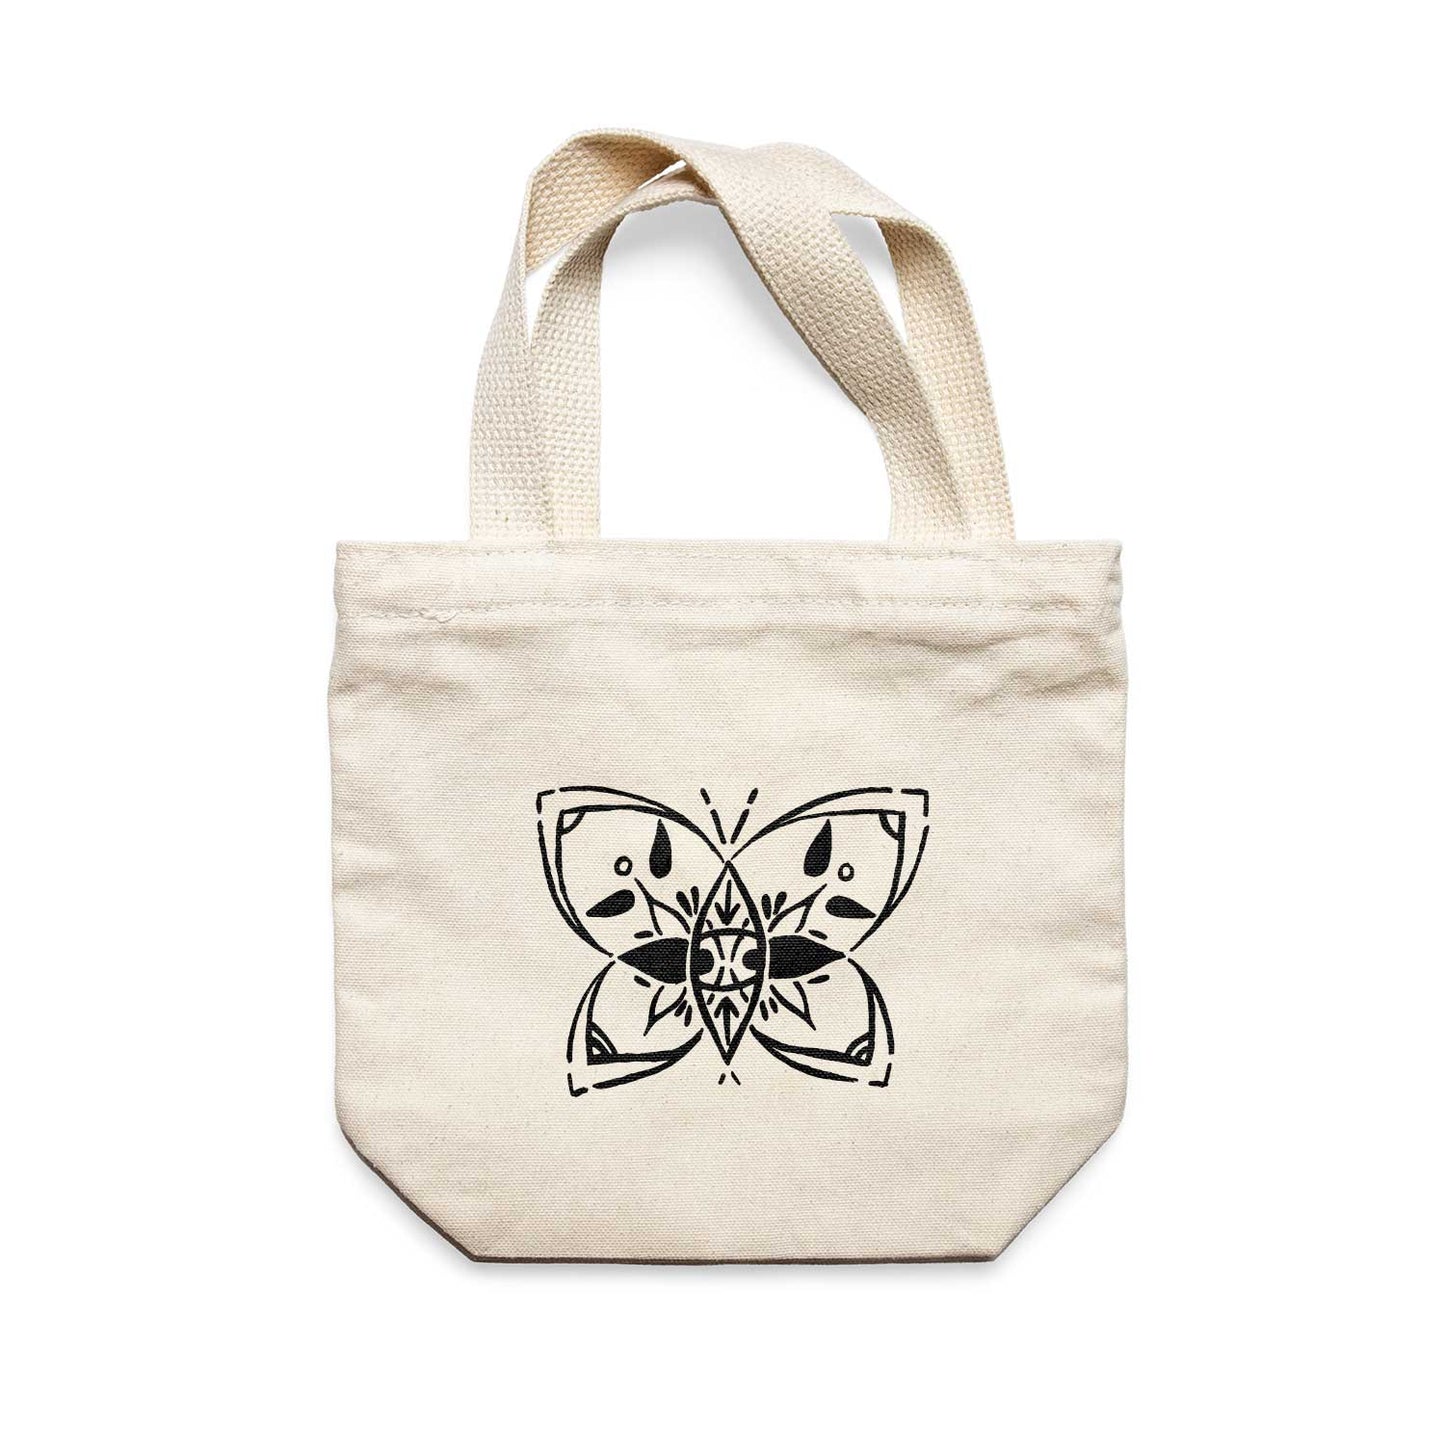 תיק צד לנשים וגברים מבד 100% כותנה טבעית בעיצוב Butterfly Tote Bag מציור מקורי של גאיה